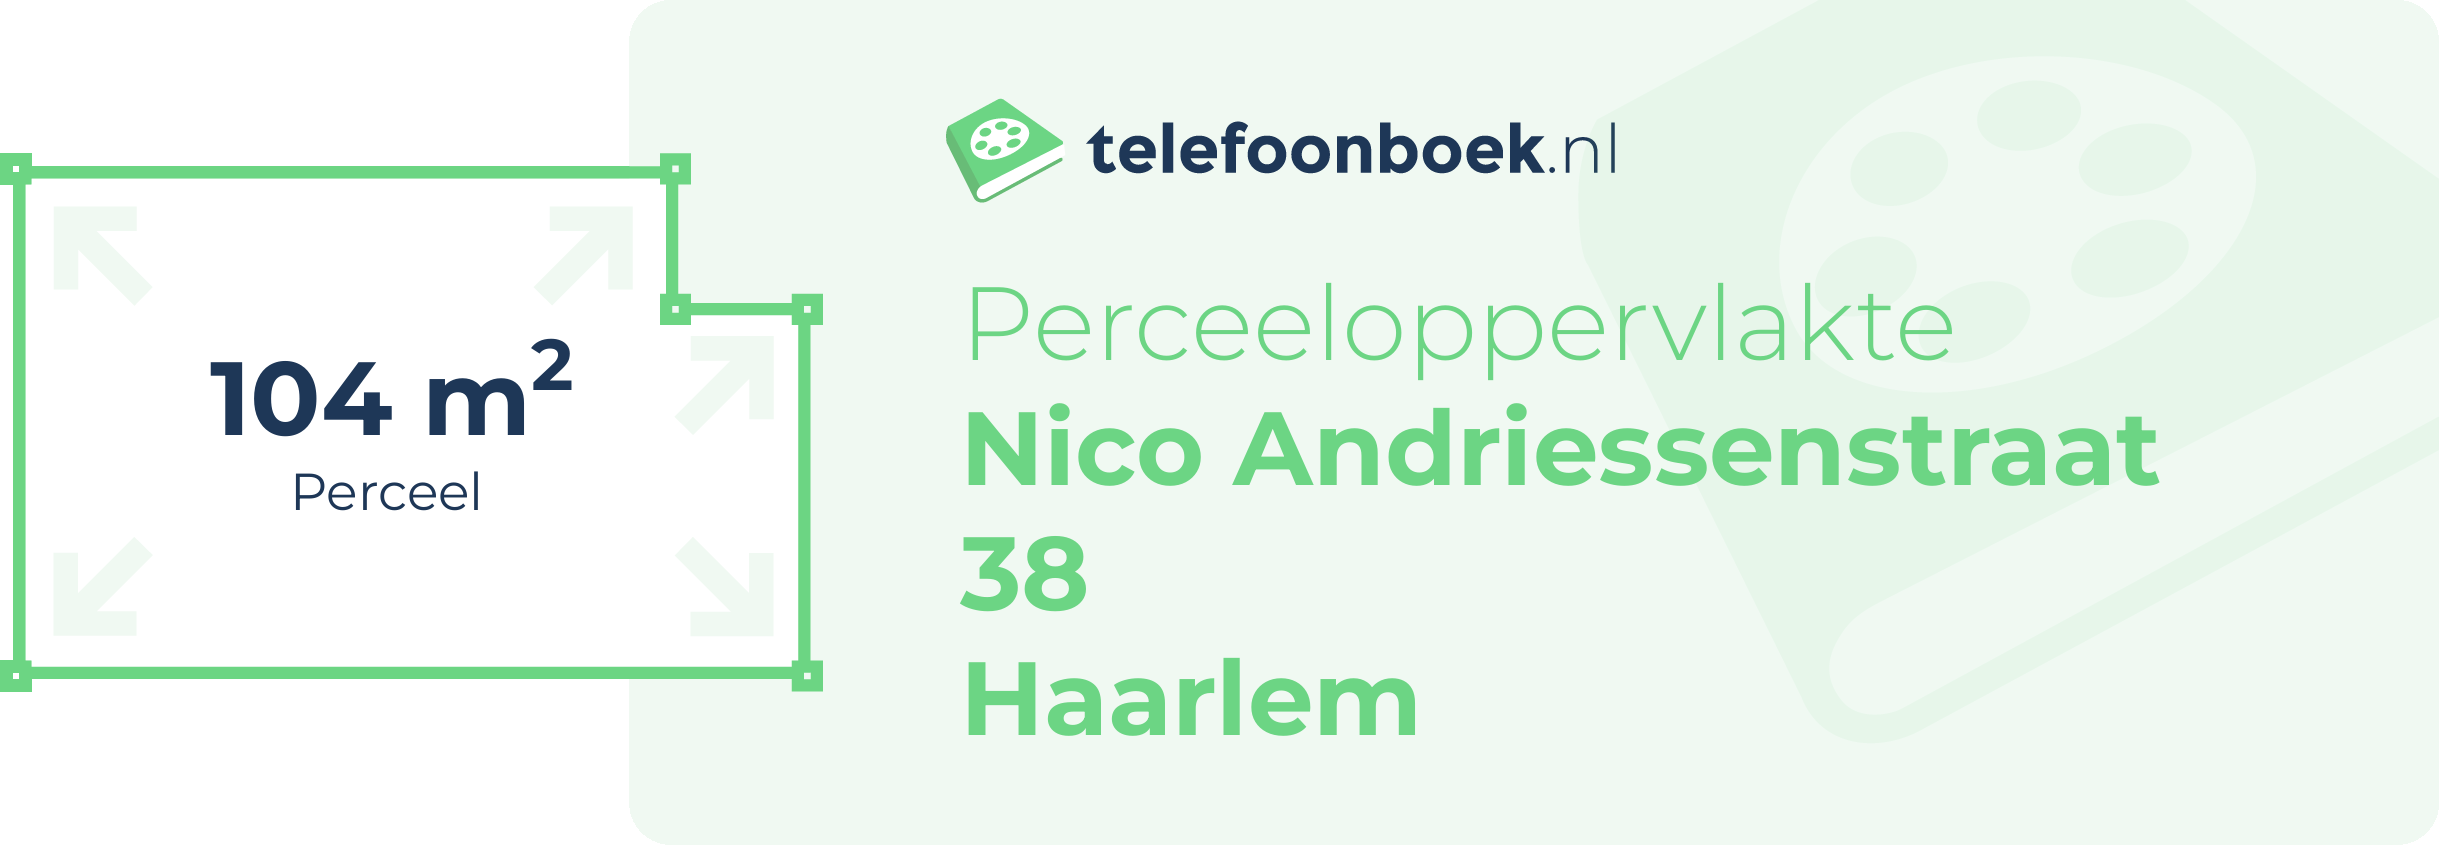 Perceeloppervlakte Nico Andriessenstraat 38 Haarlem